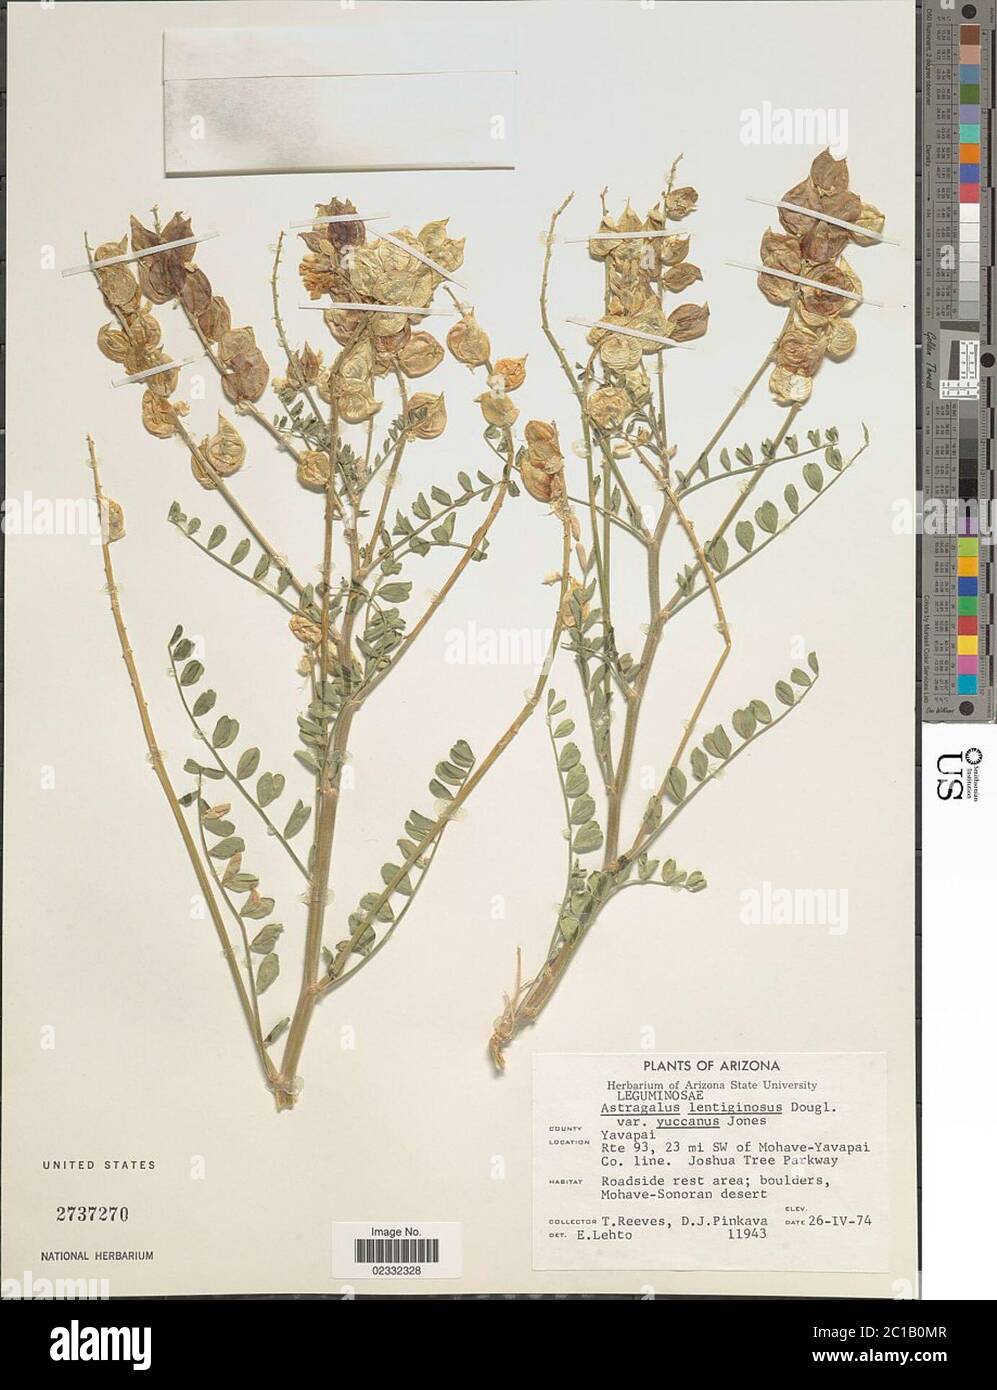 Astragalus lentiginosus var yuccanus ME Jones Astragalus lentiginosus var yuccanus ME Jones. Stock Photo